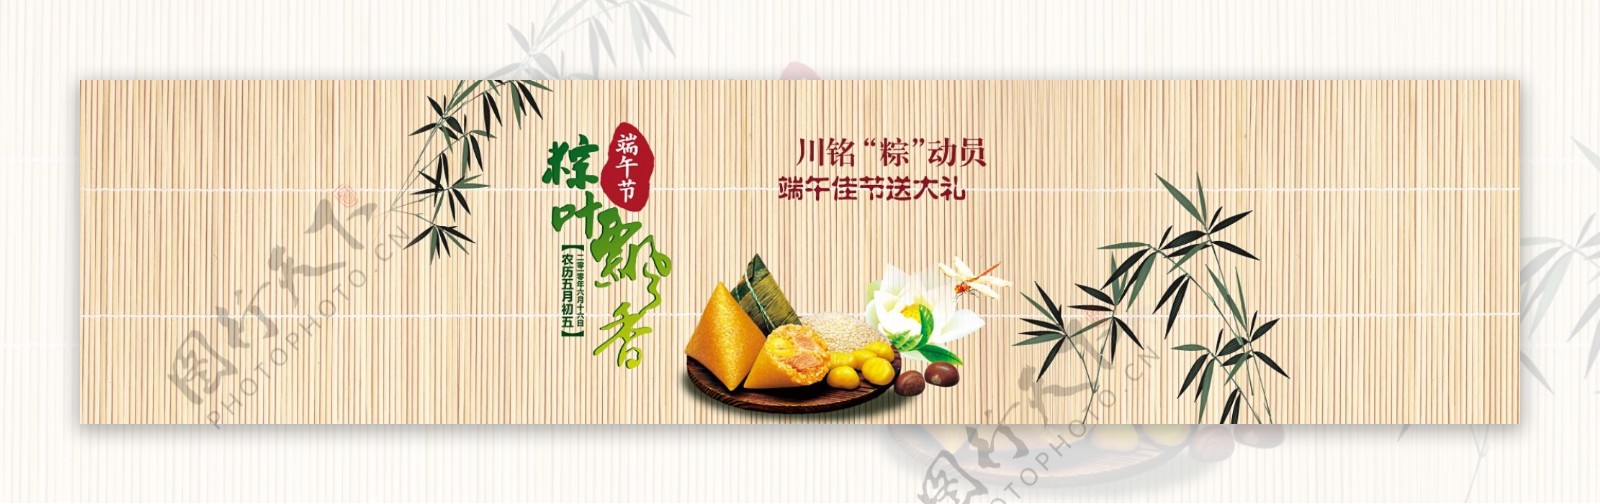 淘宝端午粽子促销海报设计